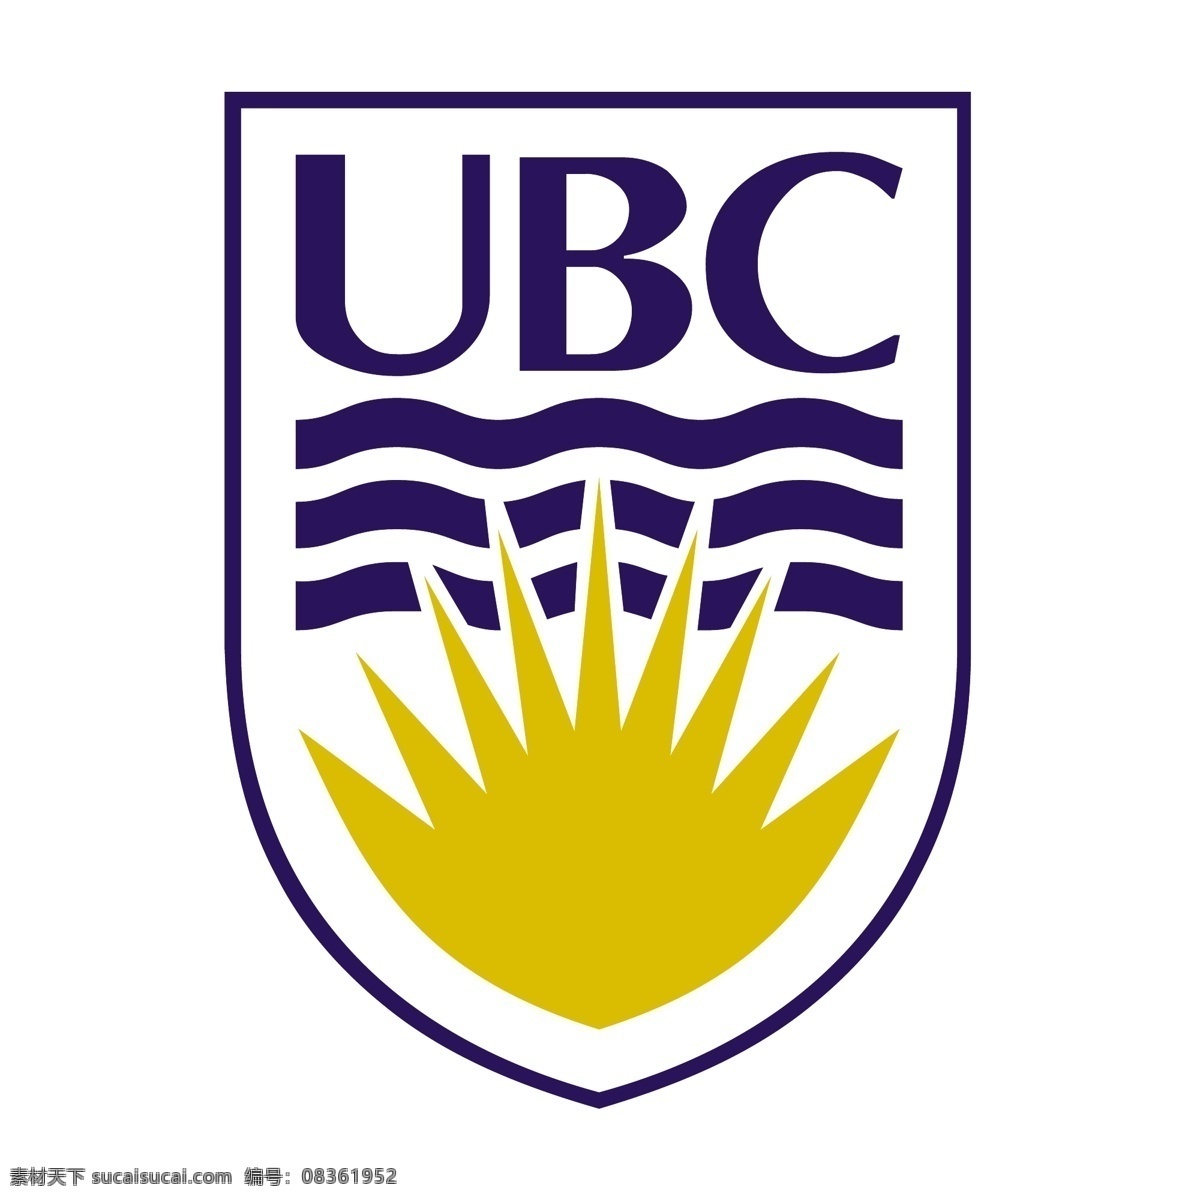 不列颠 哥伦比亚大学 ubc ubc标志 标识为免费 psd源文件 logo设计